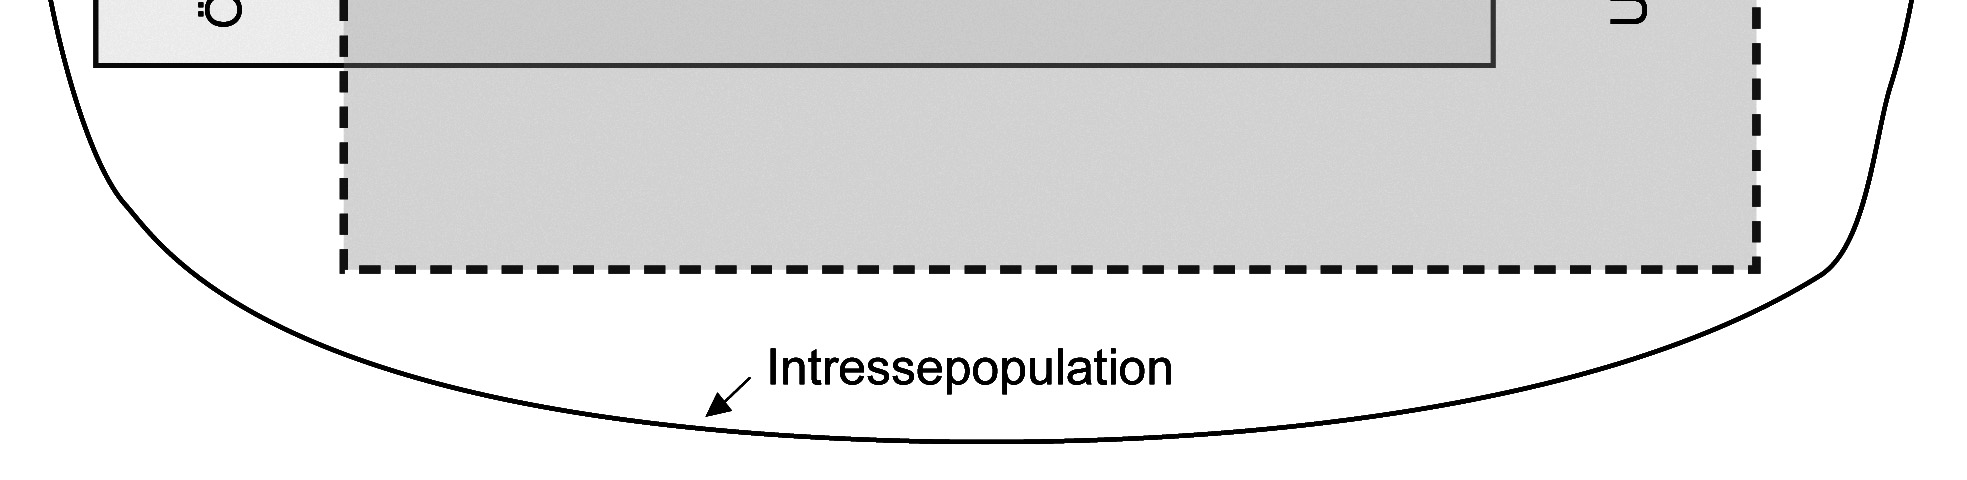 den ideala intressepopulationen genom att sätta några olika storleksgränser ( trösklar ). Intressepopulationen omfattar samtliga åkerfält oc usdjur inom svenskt lantbruk.